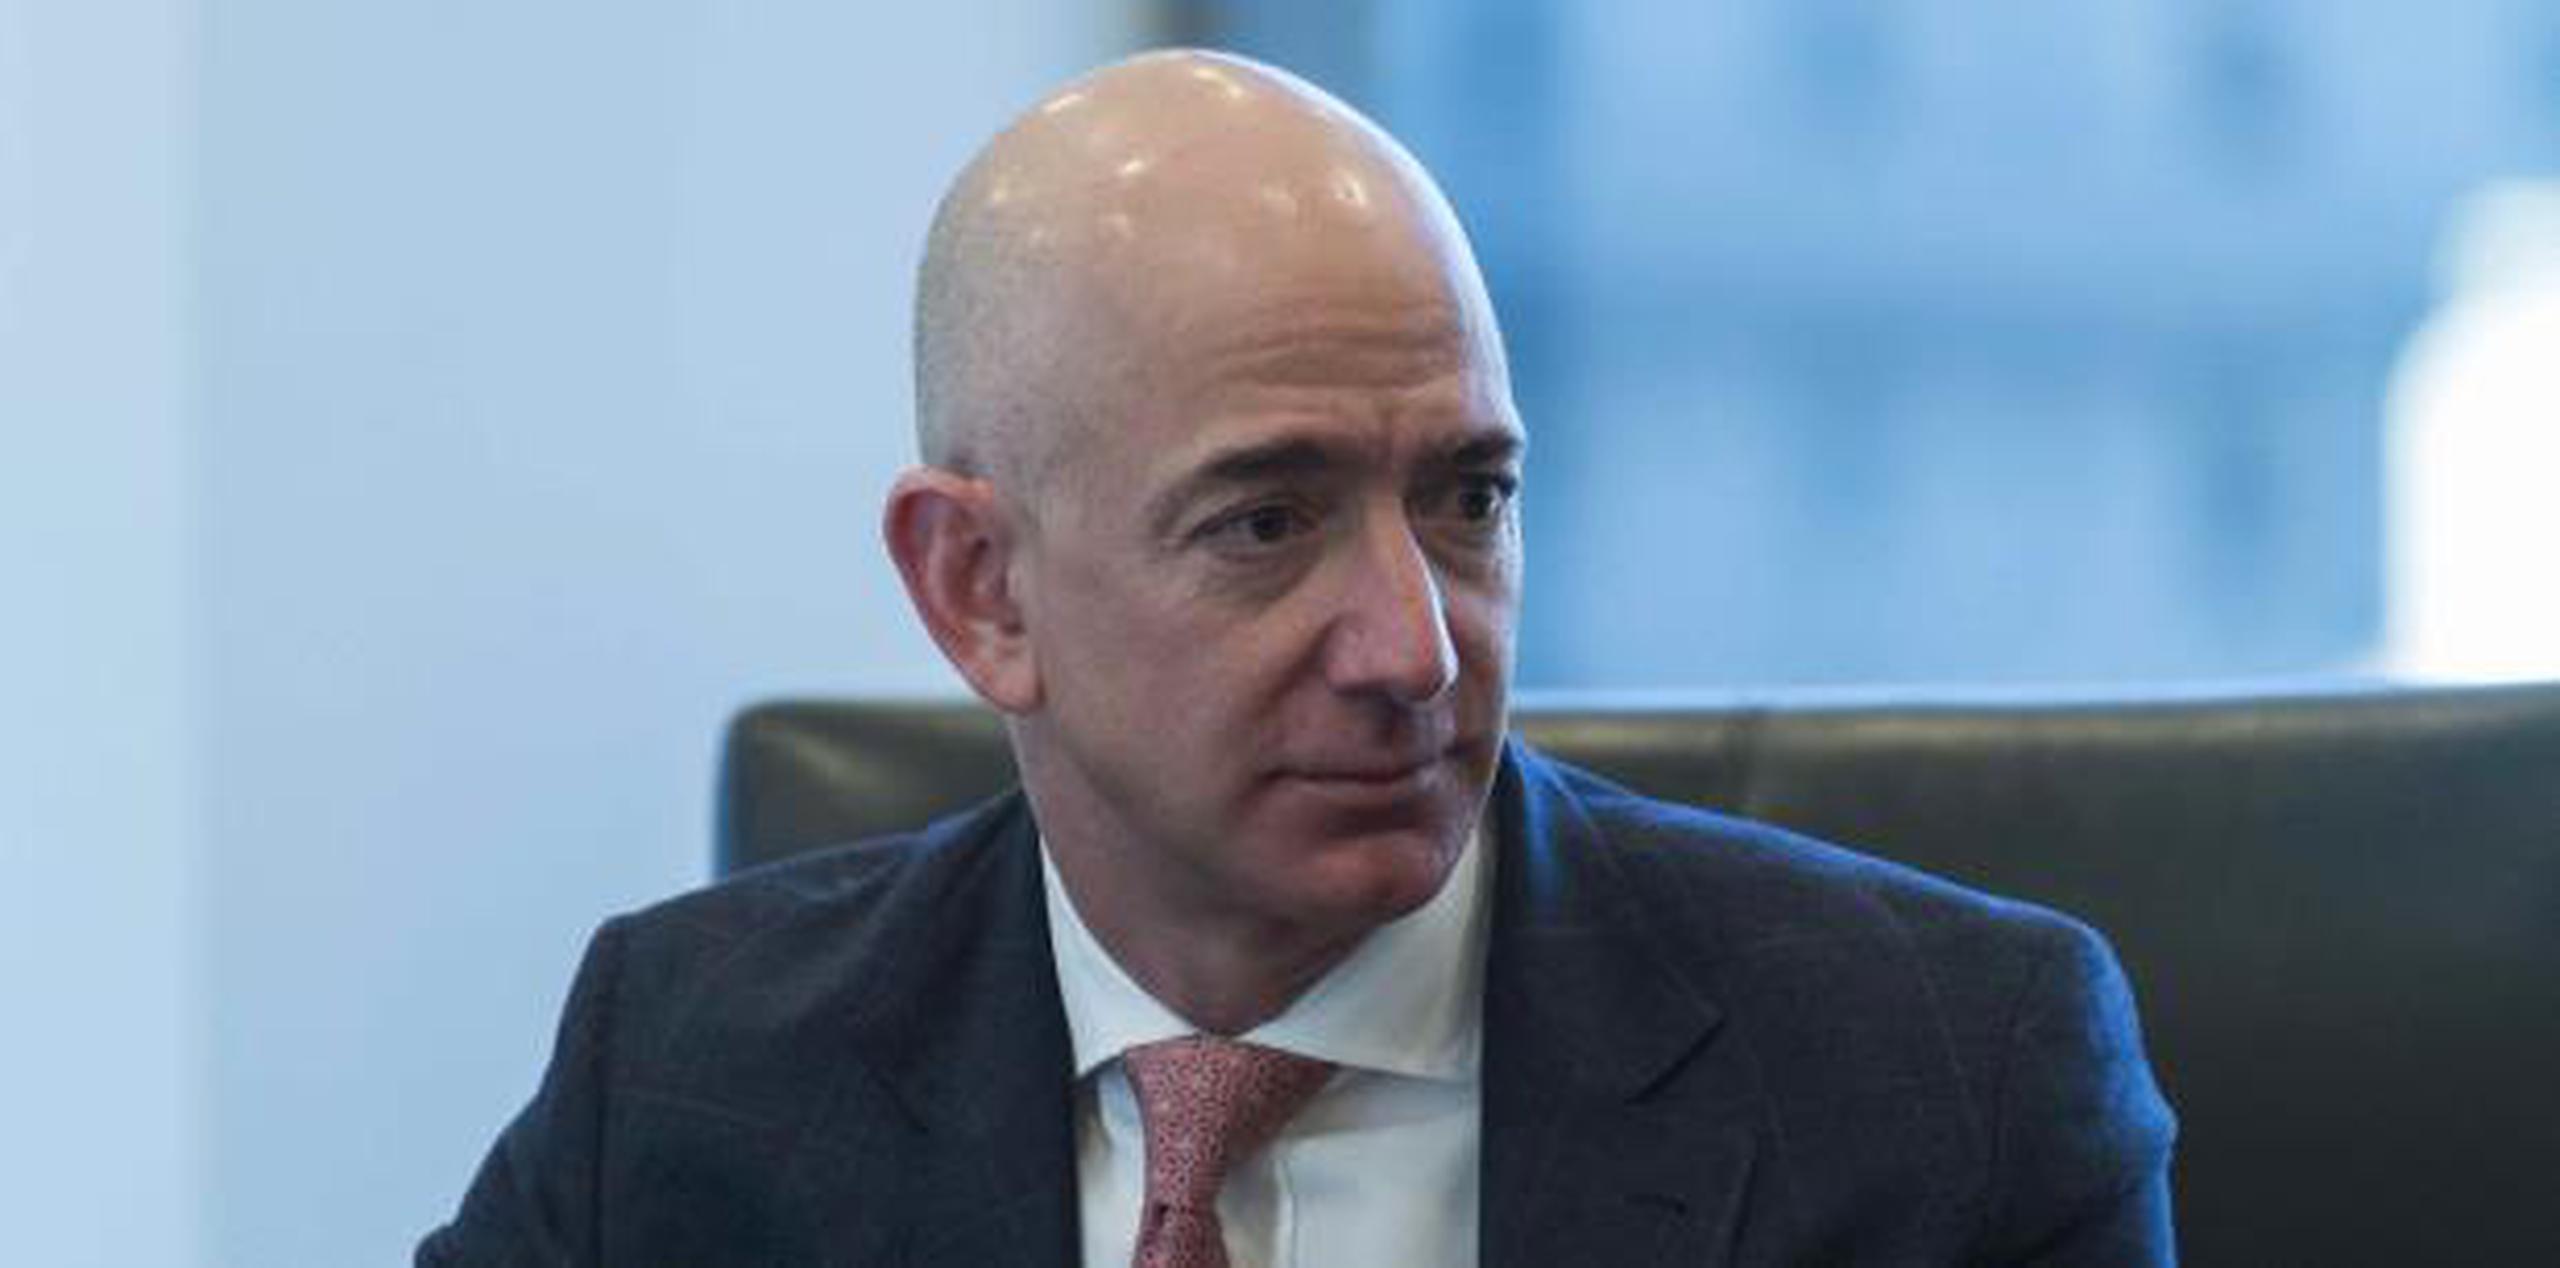 Jeff Bezos dijo que lo amenazaron con publicar fotos explícitas de él a menos que deje de investigar cómo la publicación obtuvo mensajes que intercambió con su amante. (EFE / Albin Lohr-Jones)